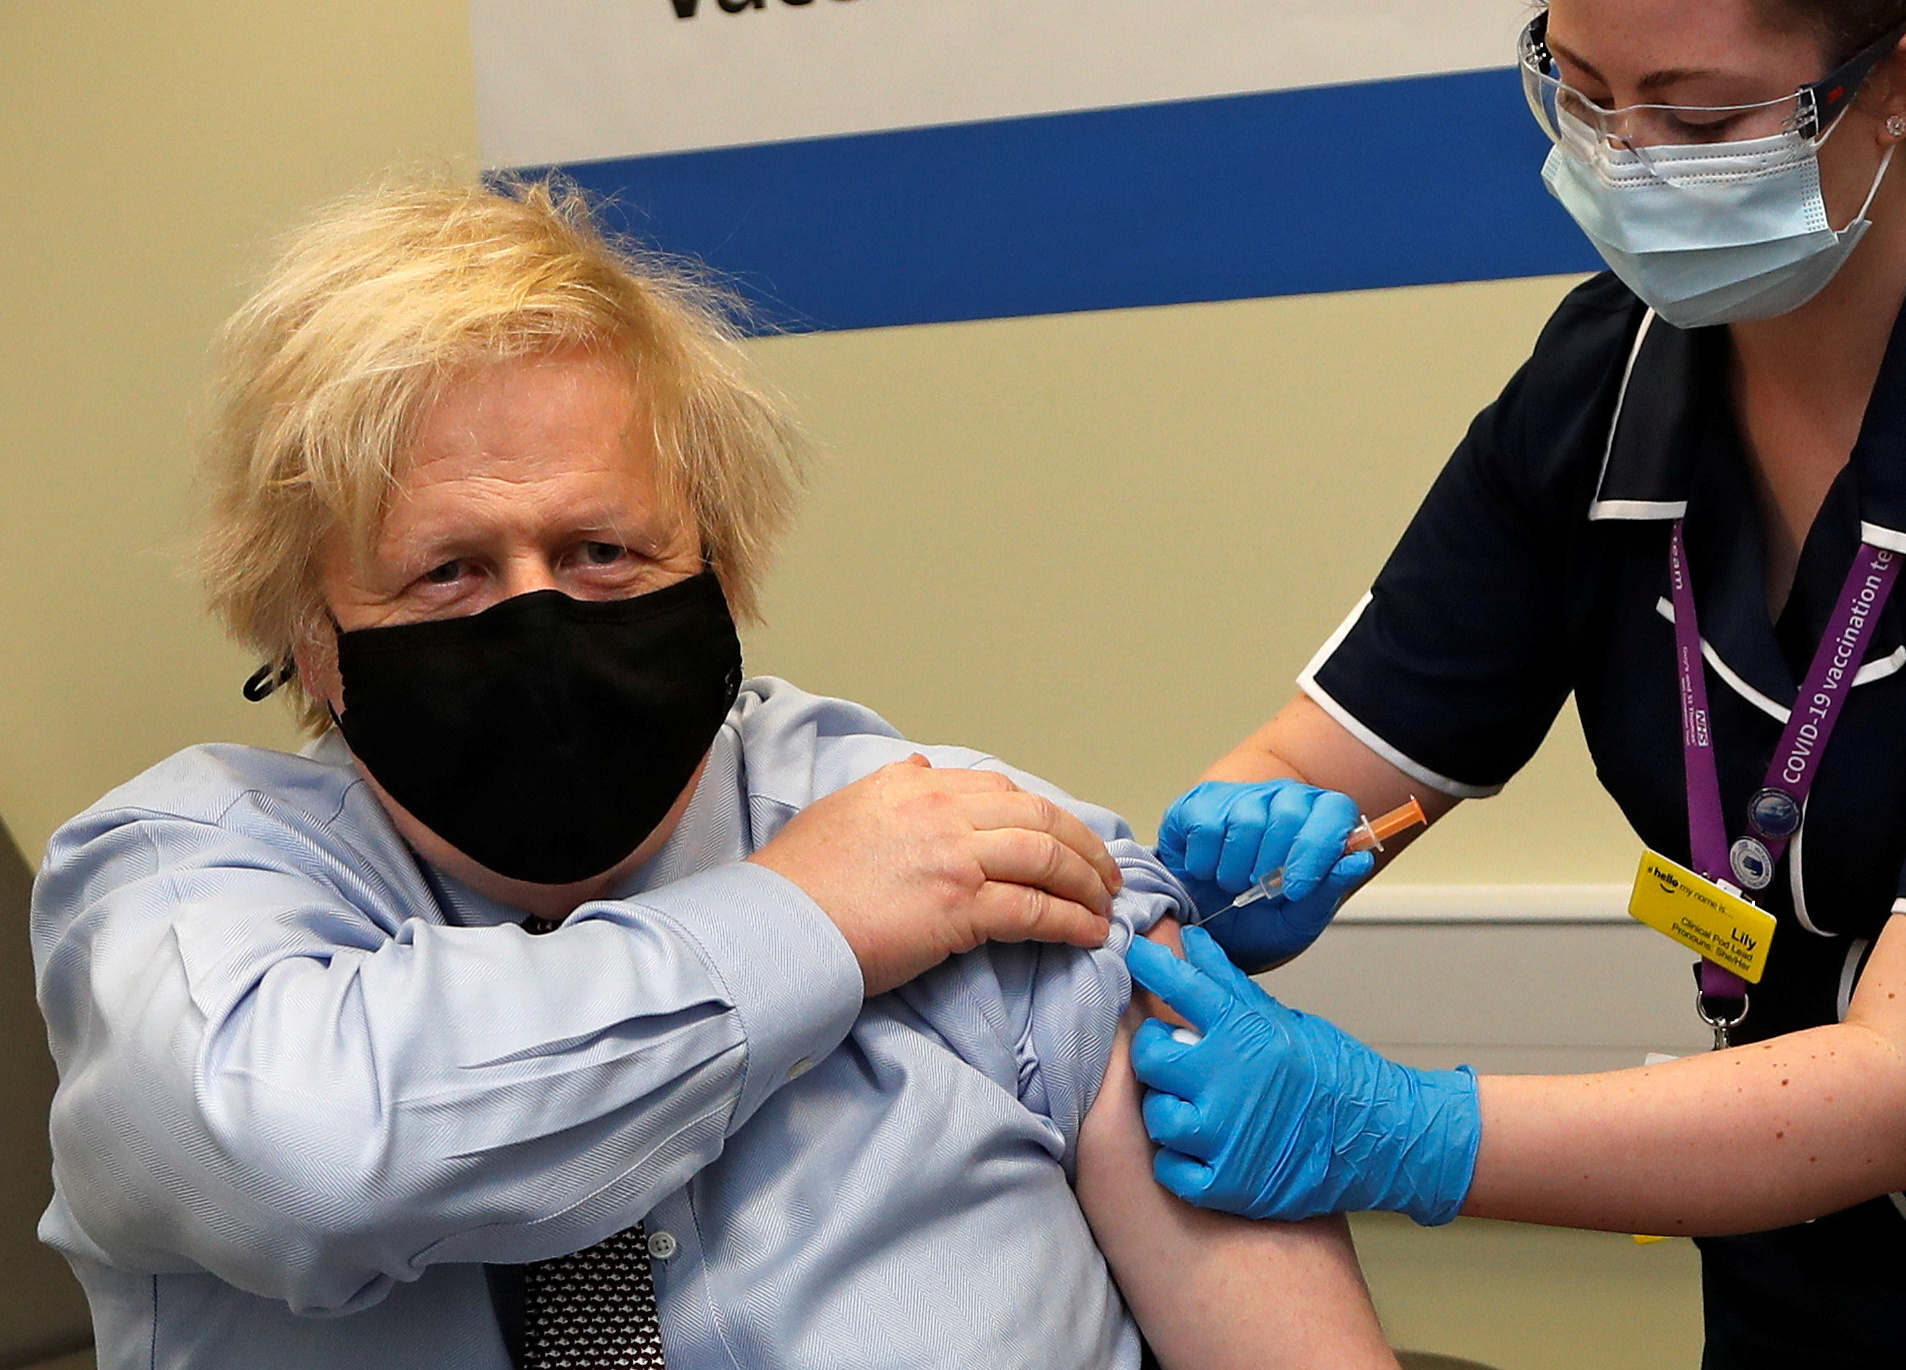 El premier británico Boris Johnson se vacunó con la fórmula para infundir confianza en la población (Reuters)